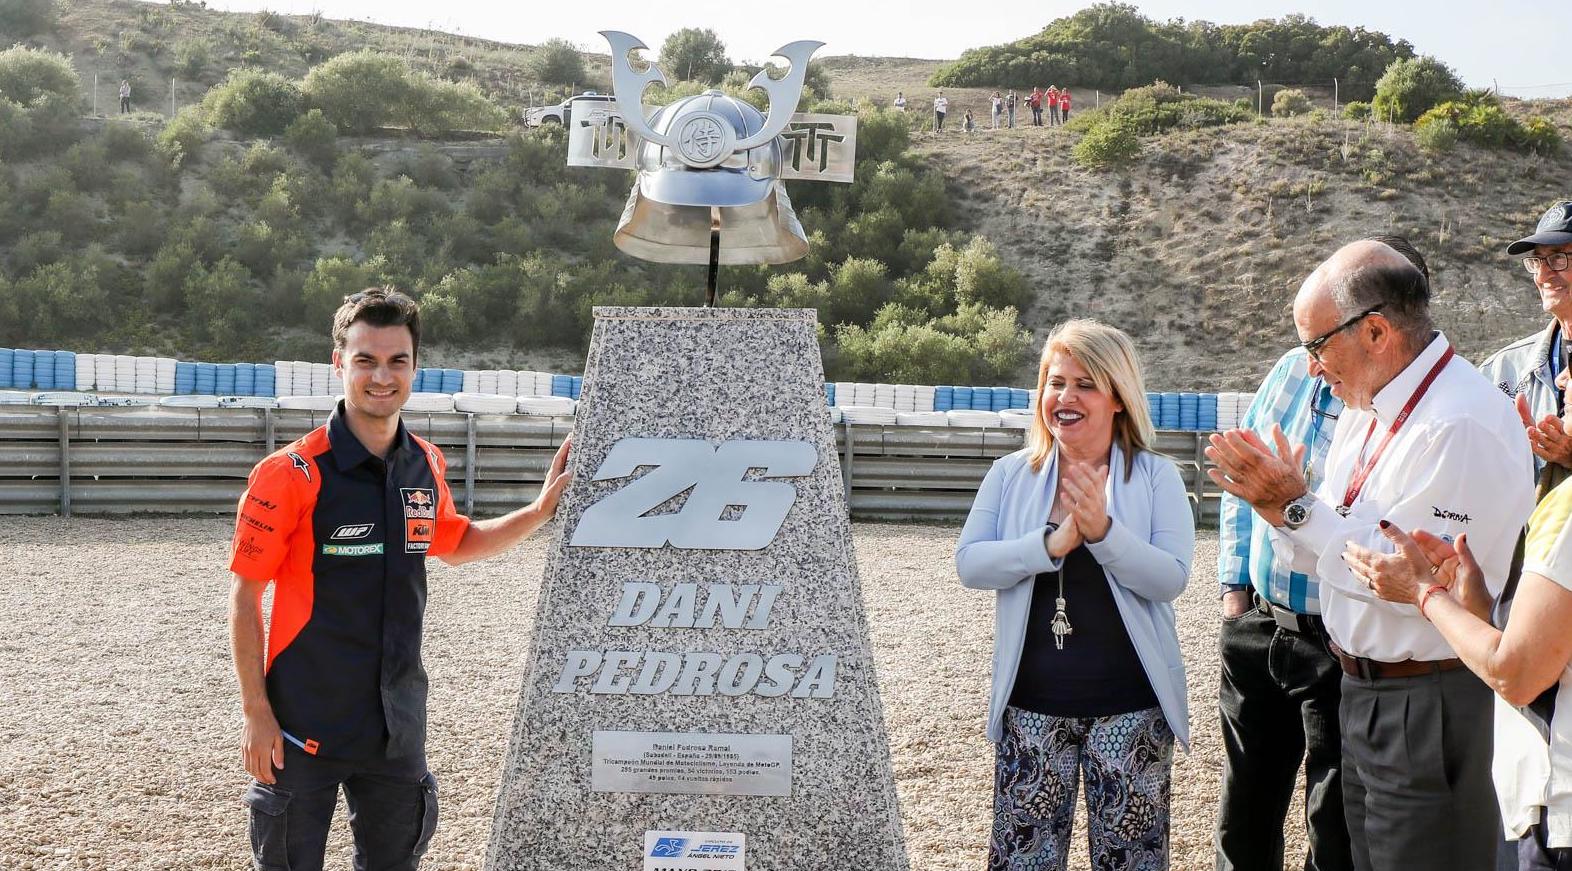 La alcaldesa Mamen Sánchez, junto a Carmelo Ezpeleta, CEO de Dorna, durante la inauguración de la curva de Dani Pedrosa en el Circuito de Jerez, hace unos años.